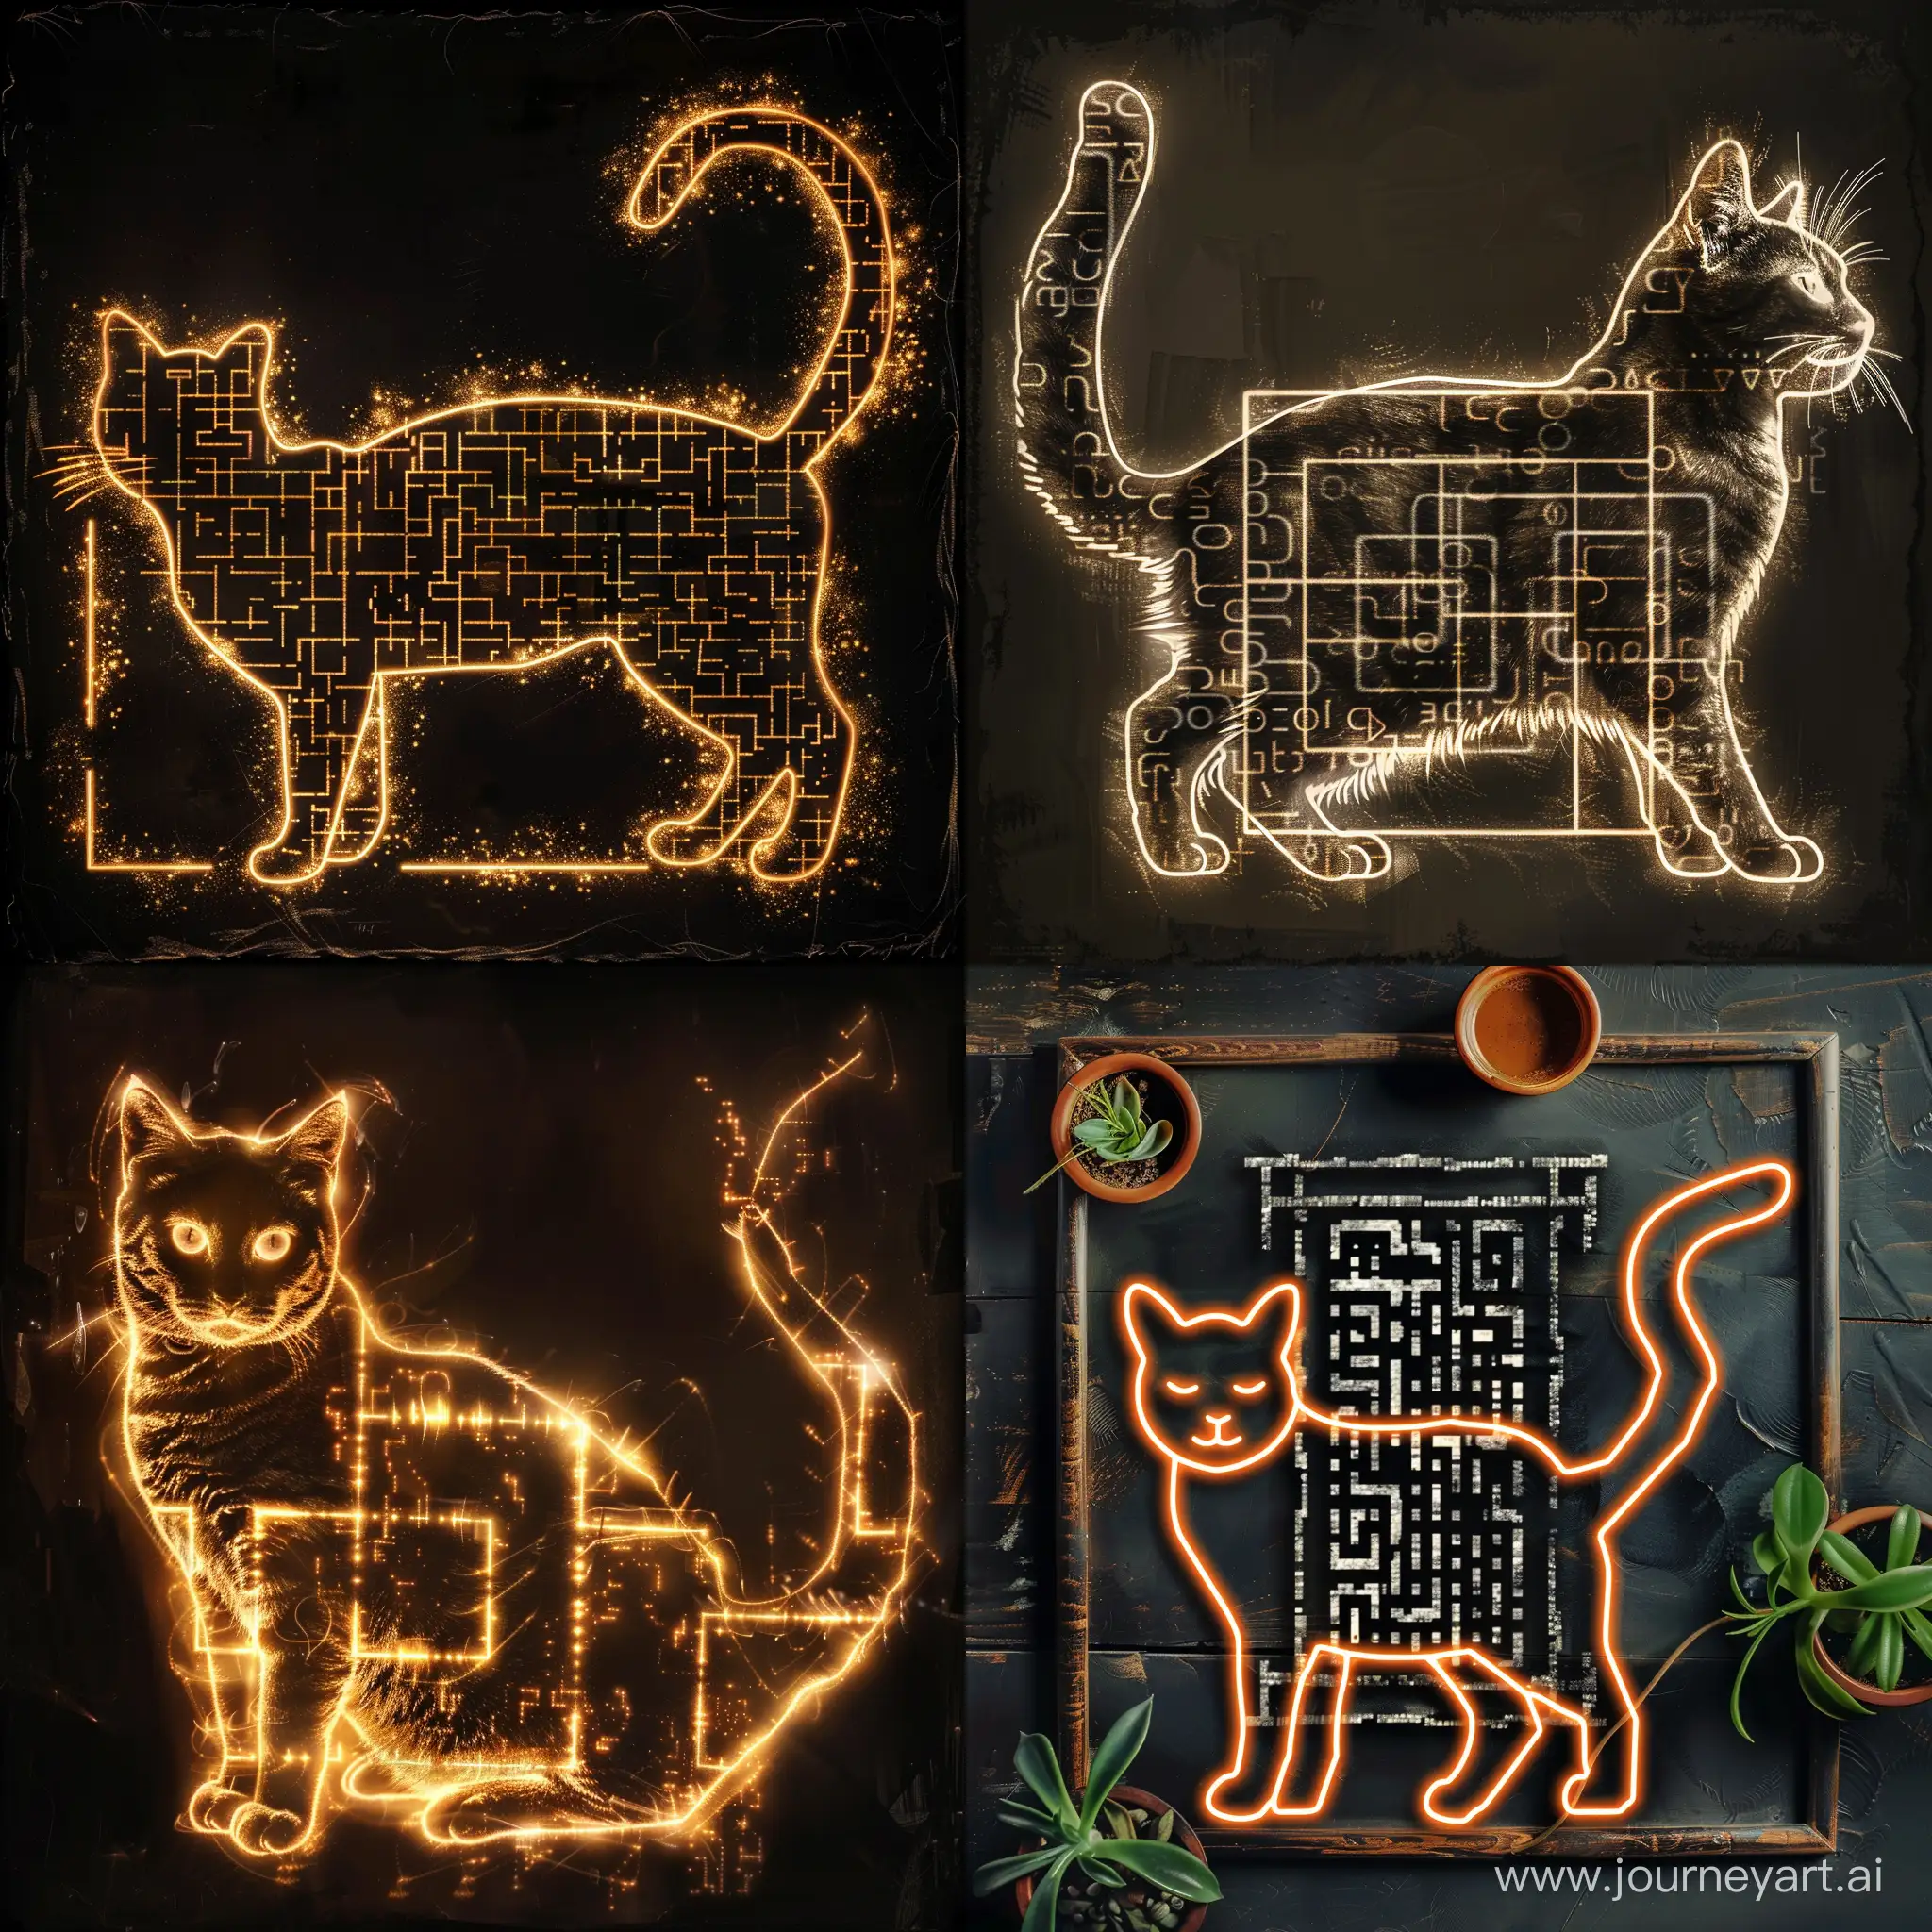 Нетрадиционный QR-код в форме кошки, сфотографированный цифровым способом с художественной элегантностью. Типичная квадратная сетка в границах контура кошки, игривый и визуально захватывающий символ, доставляющий удовольствие наблюдателю